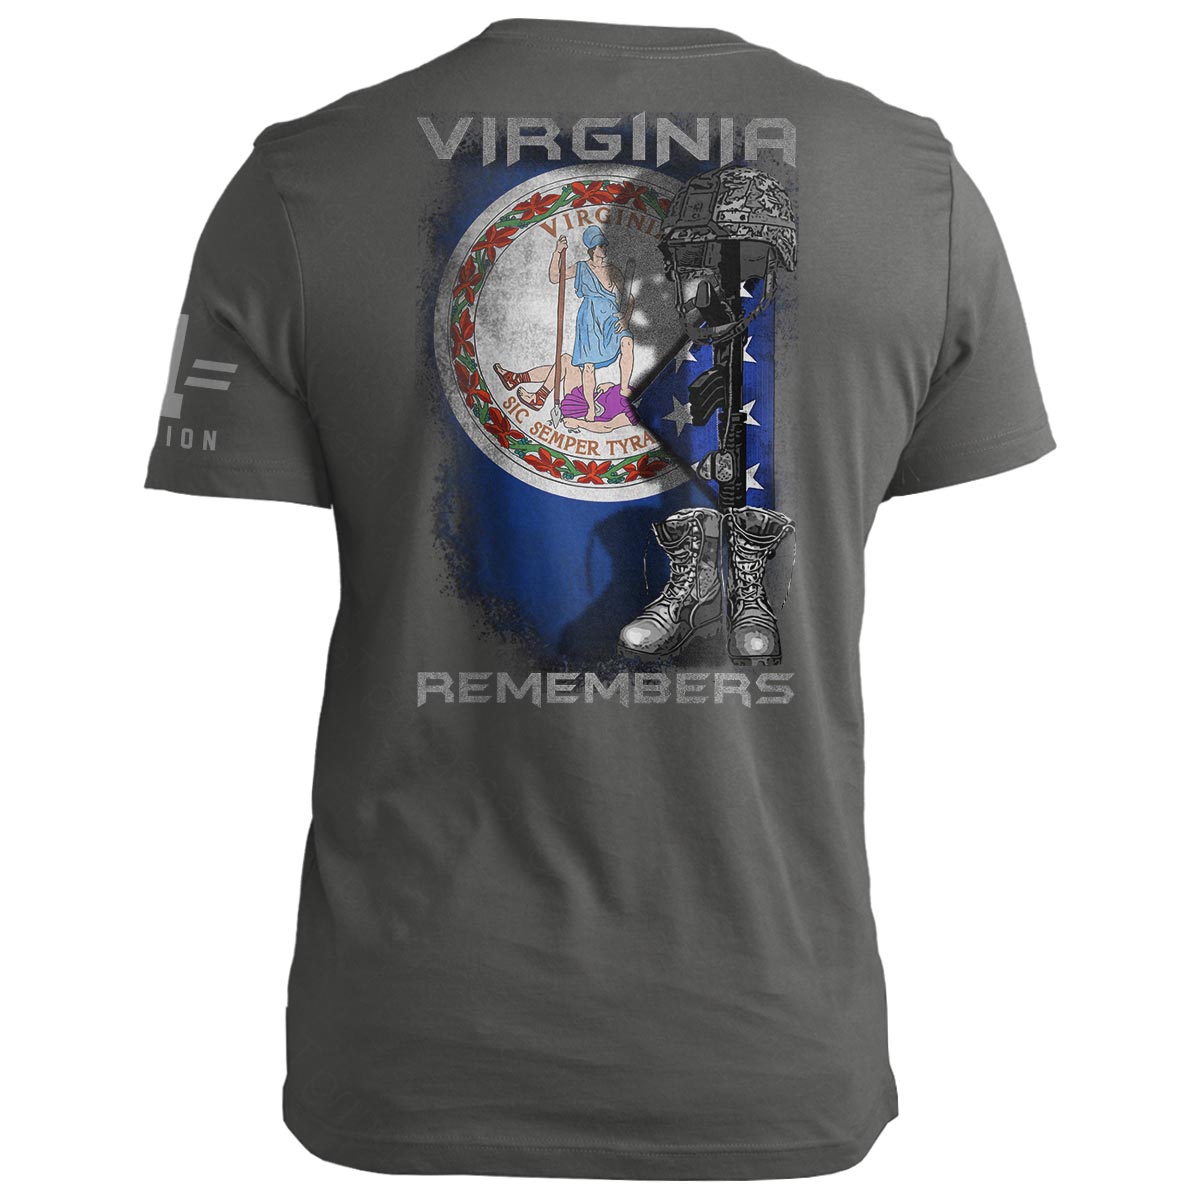 Virginia Remembers